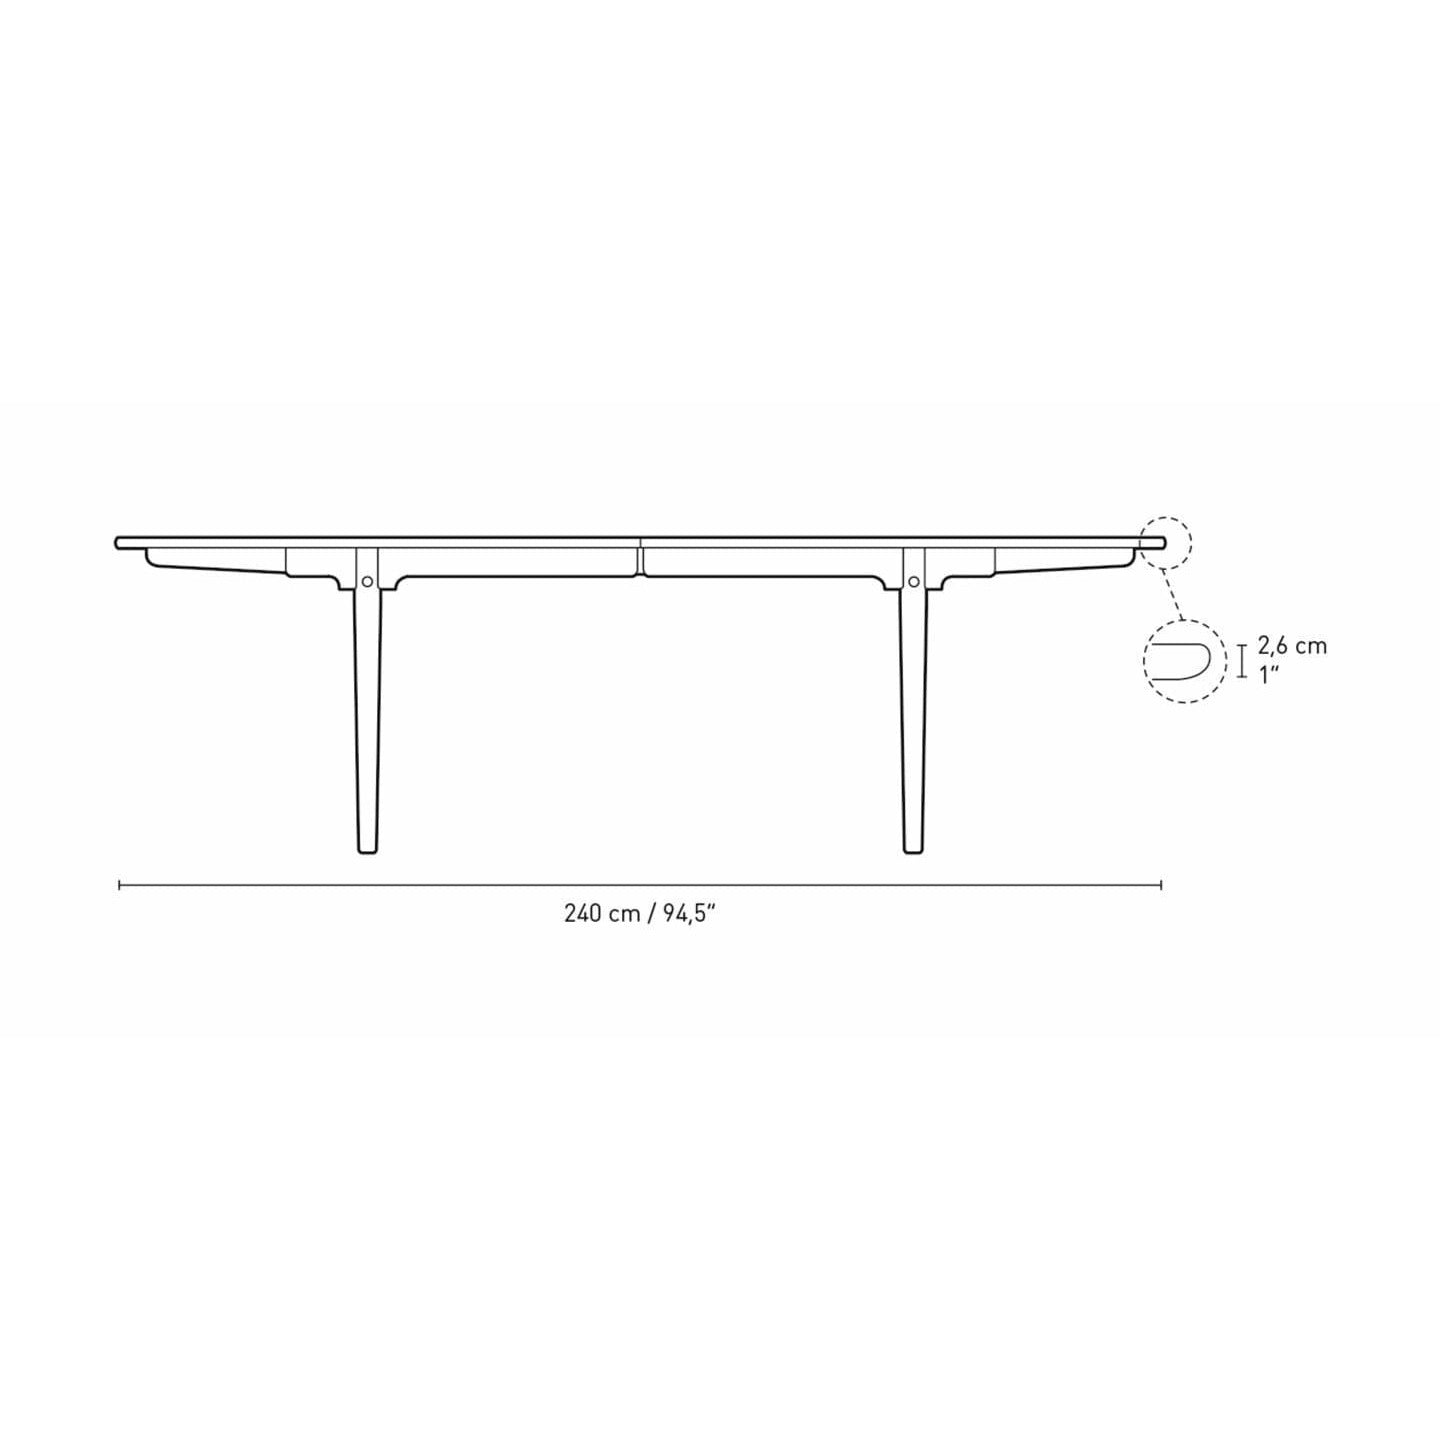 Carl Hansen CH339 matbord med dragning för 4 plattor, ekolja